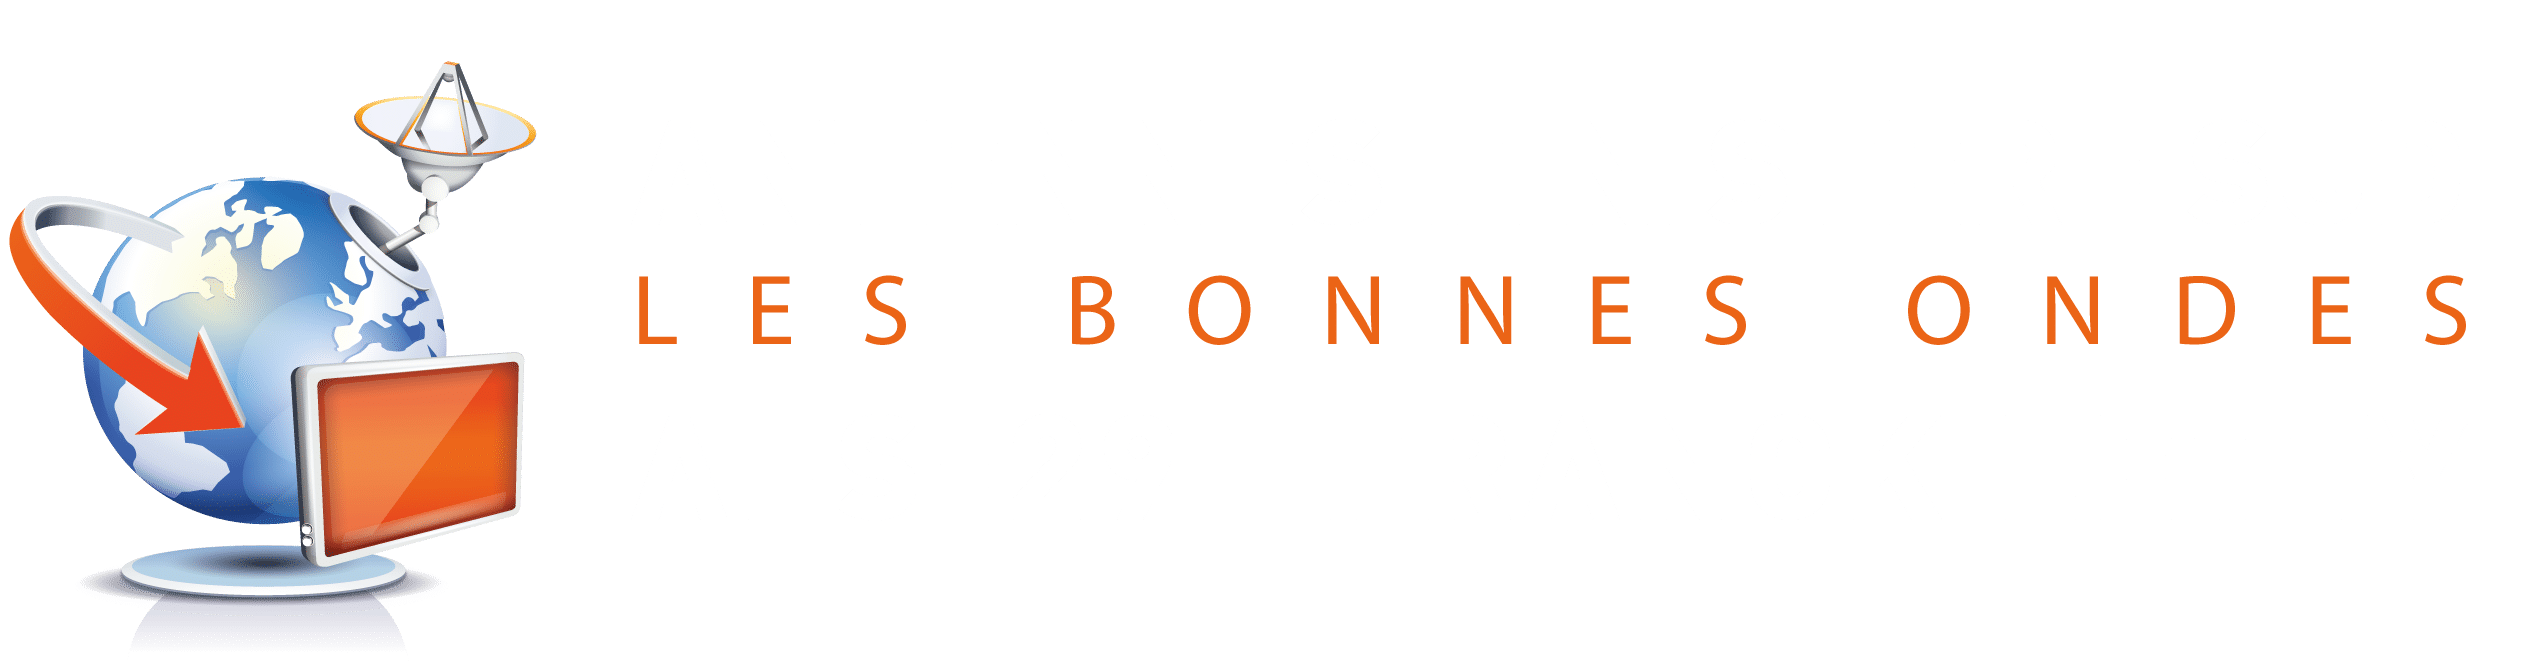 AFS29 - FRANCK LETTY